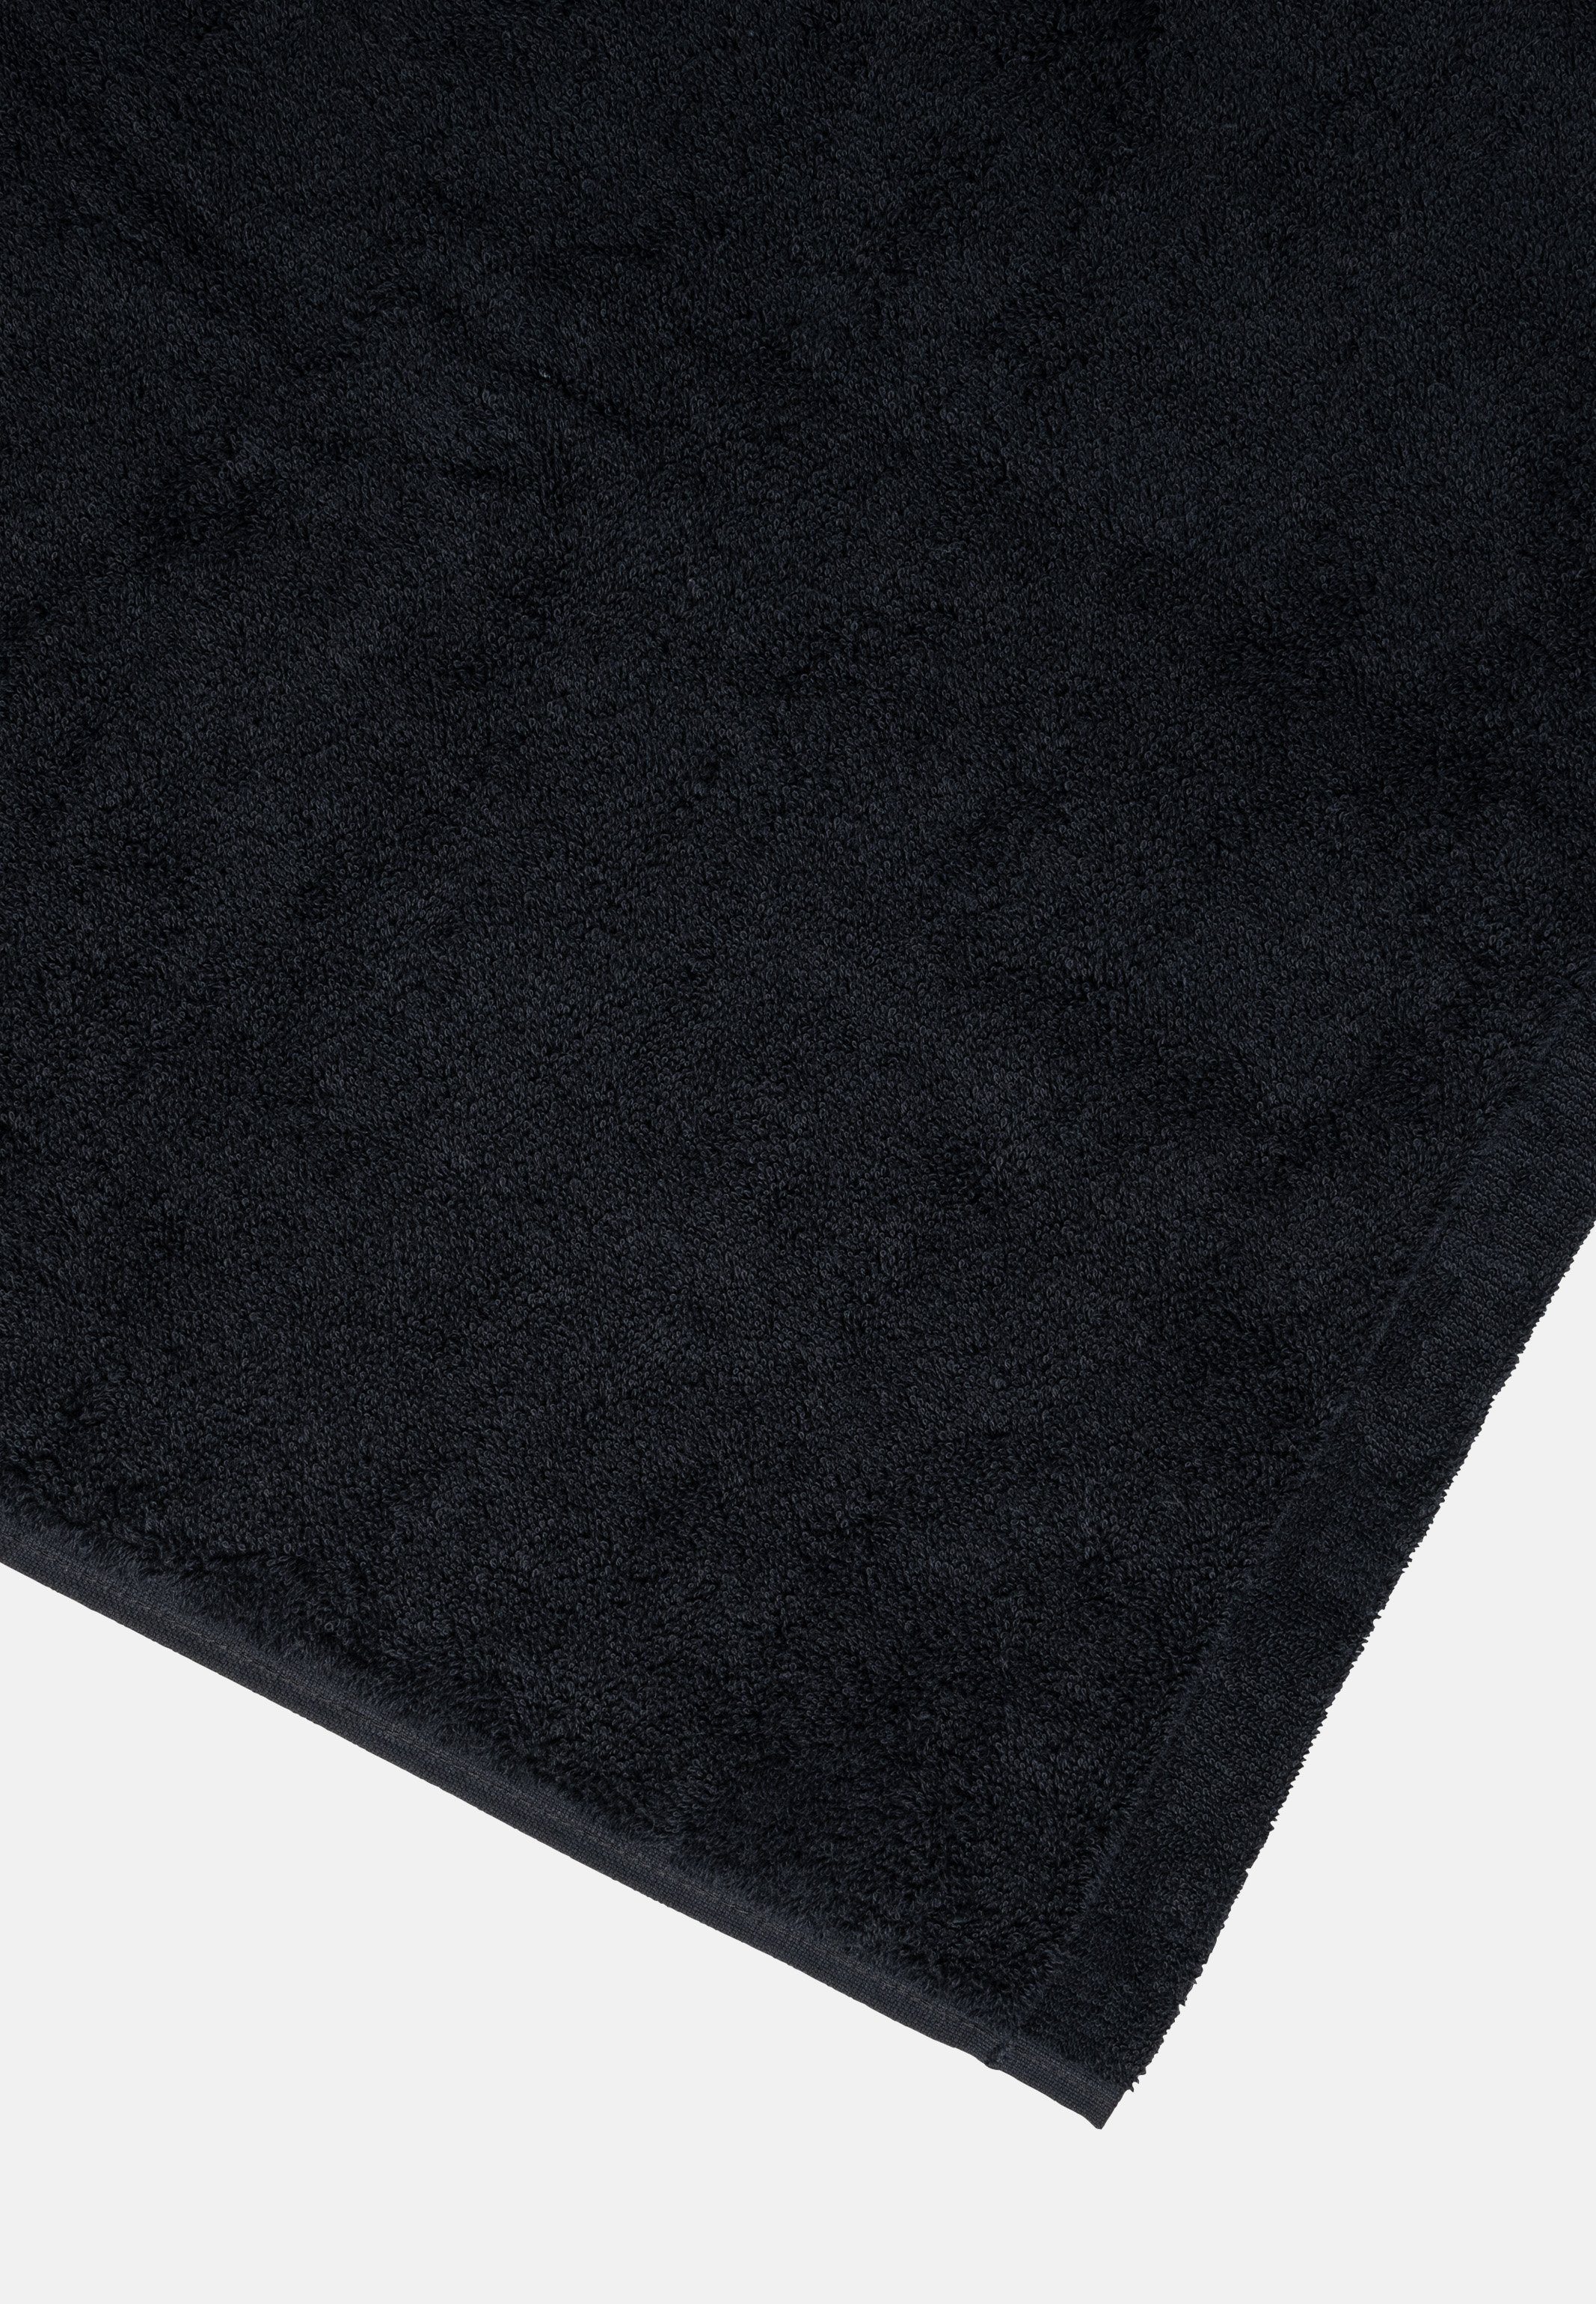 Handtuch Handtuch Cawö Weich flauschig Set (Spar-Set, - im 4 X extra - Schwarz Lifestyle, und 4-tlg), Baumwolle Walkfrottee, Set